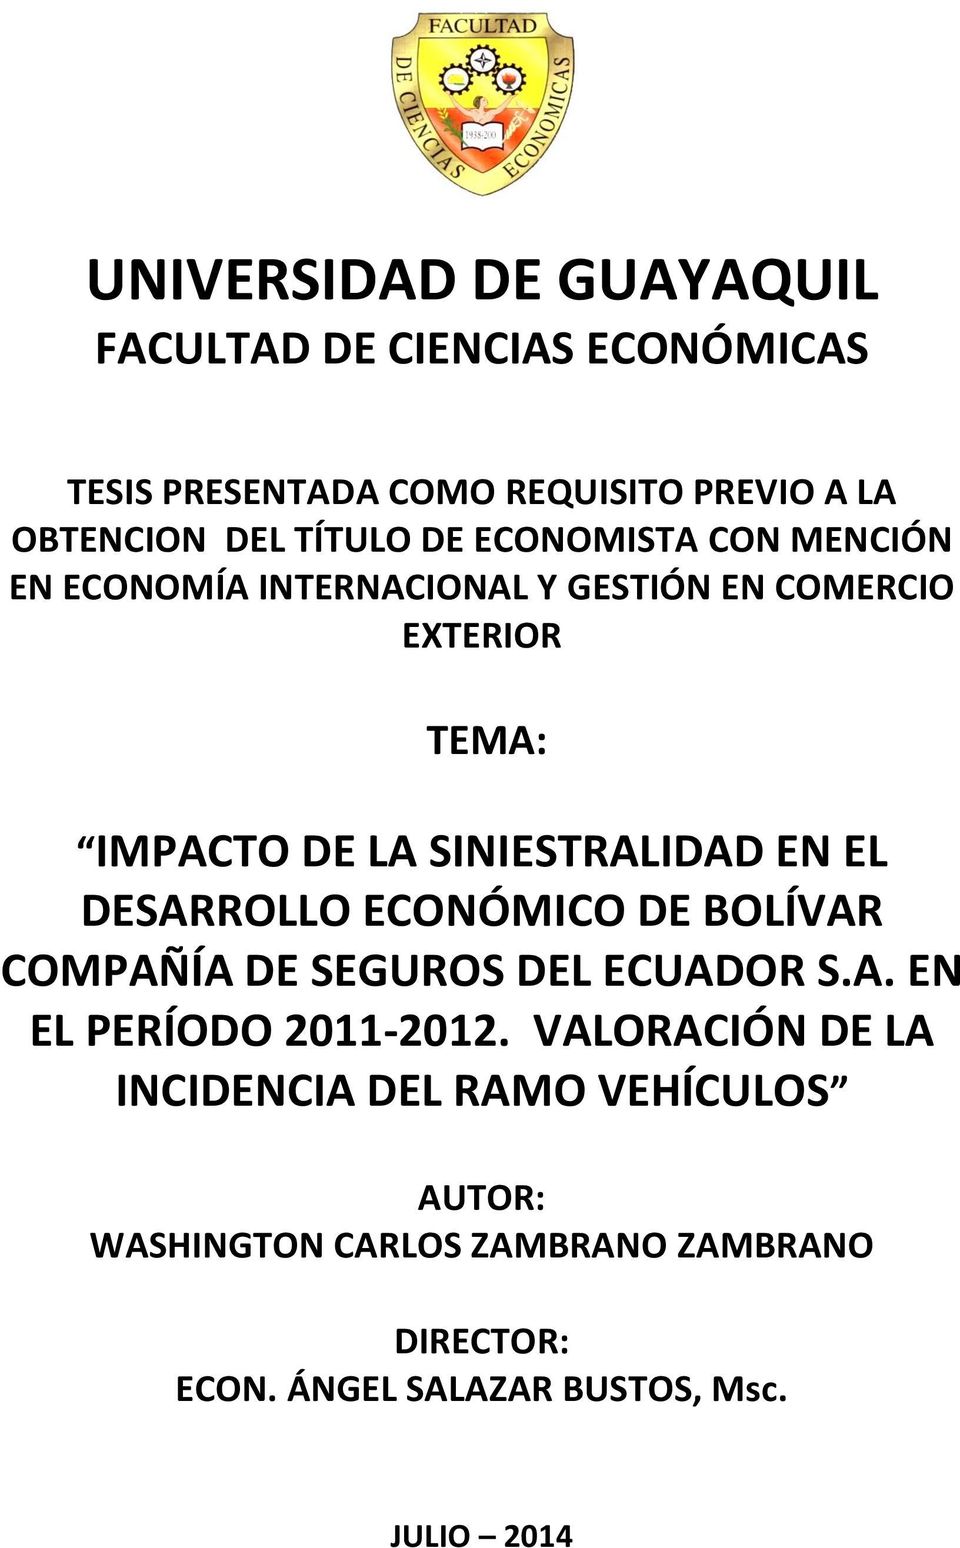 SINIESTRALIDAD EN EL DESARROLLO ECONÓMICO DE BOLÍVAR COMPAÑÍA DE SEGUROS DEL ECUADOR S.A. EN EL PERÍODO 2011-2012.